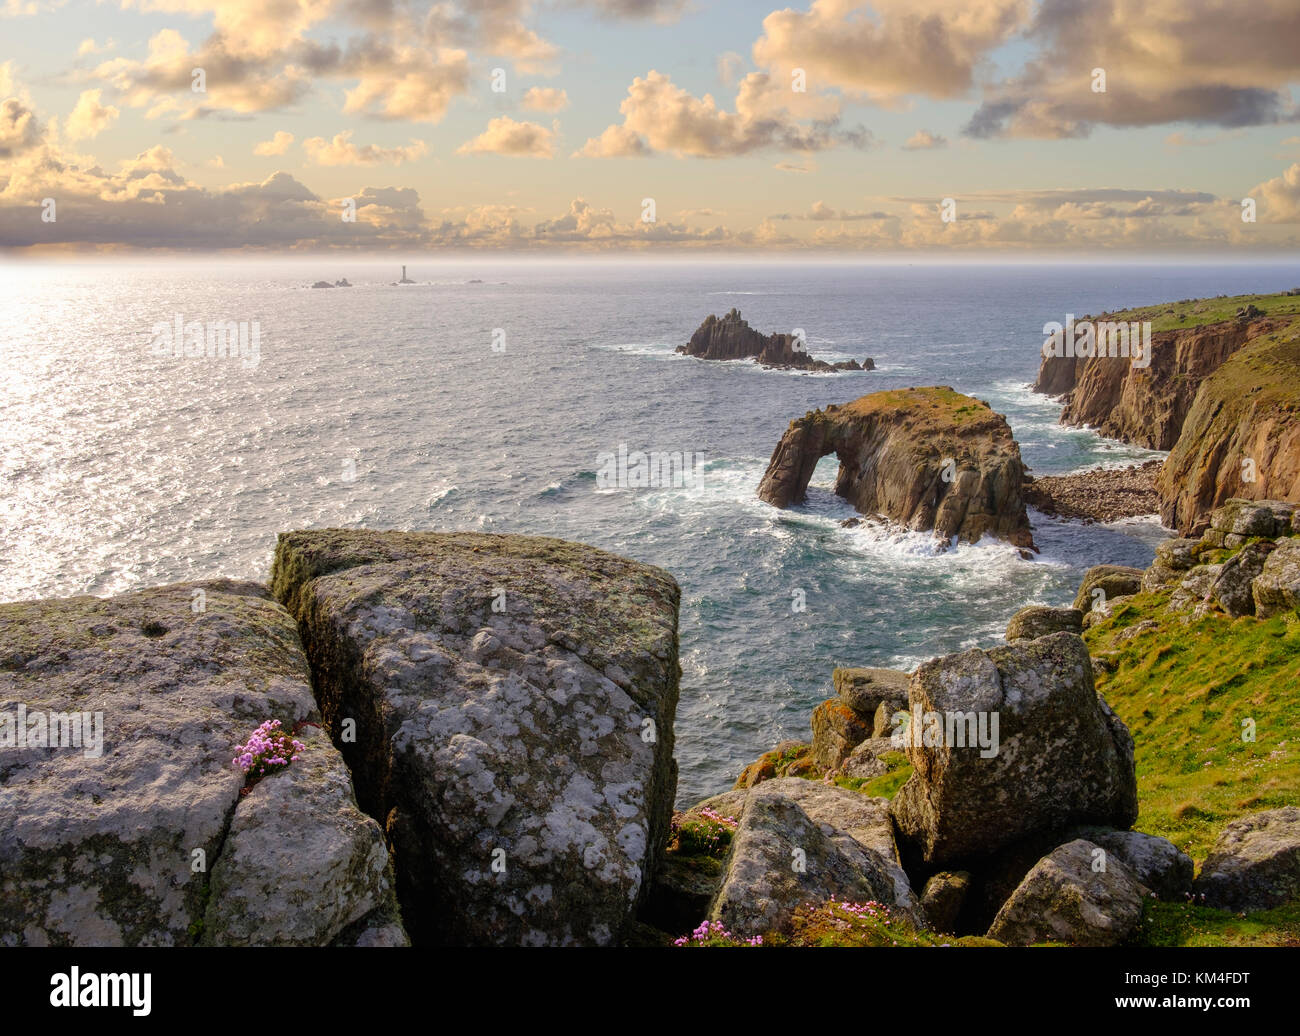 Steilküste mit Enys Dodman Rock, hinten der Longship Leuchtturm, Land's End, Cornwall, Inghilterra, Großbritannien Foto Stock